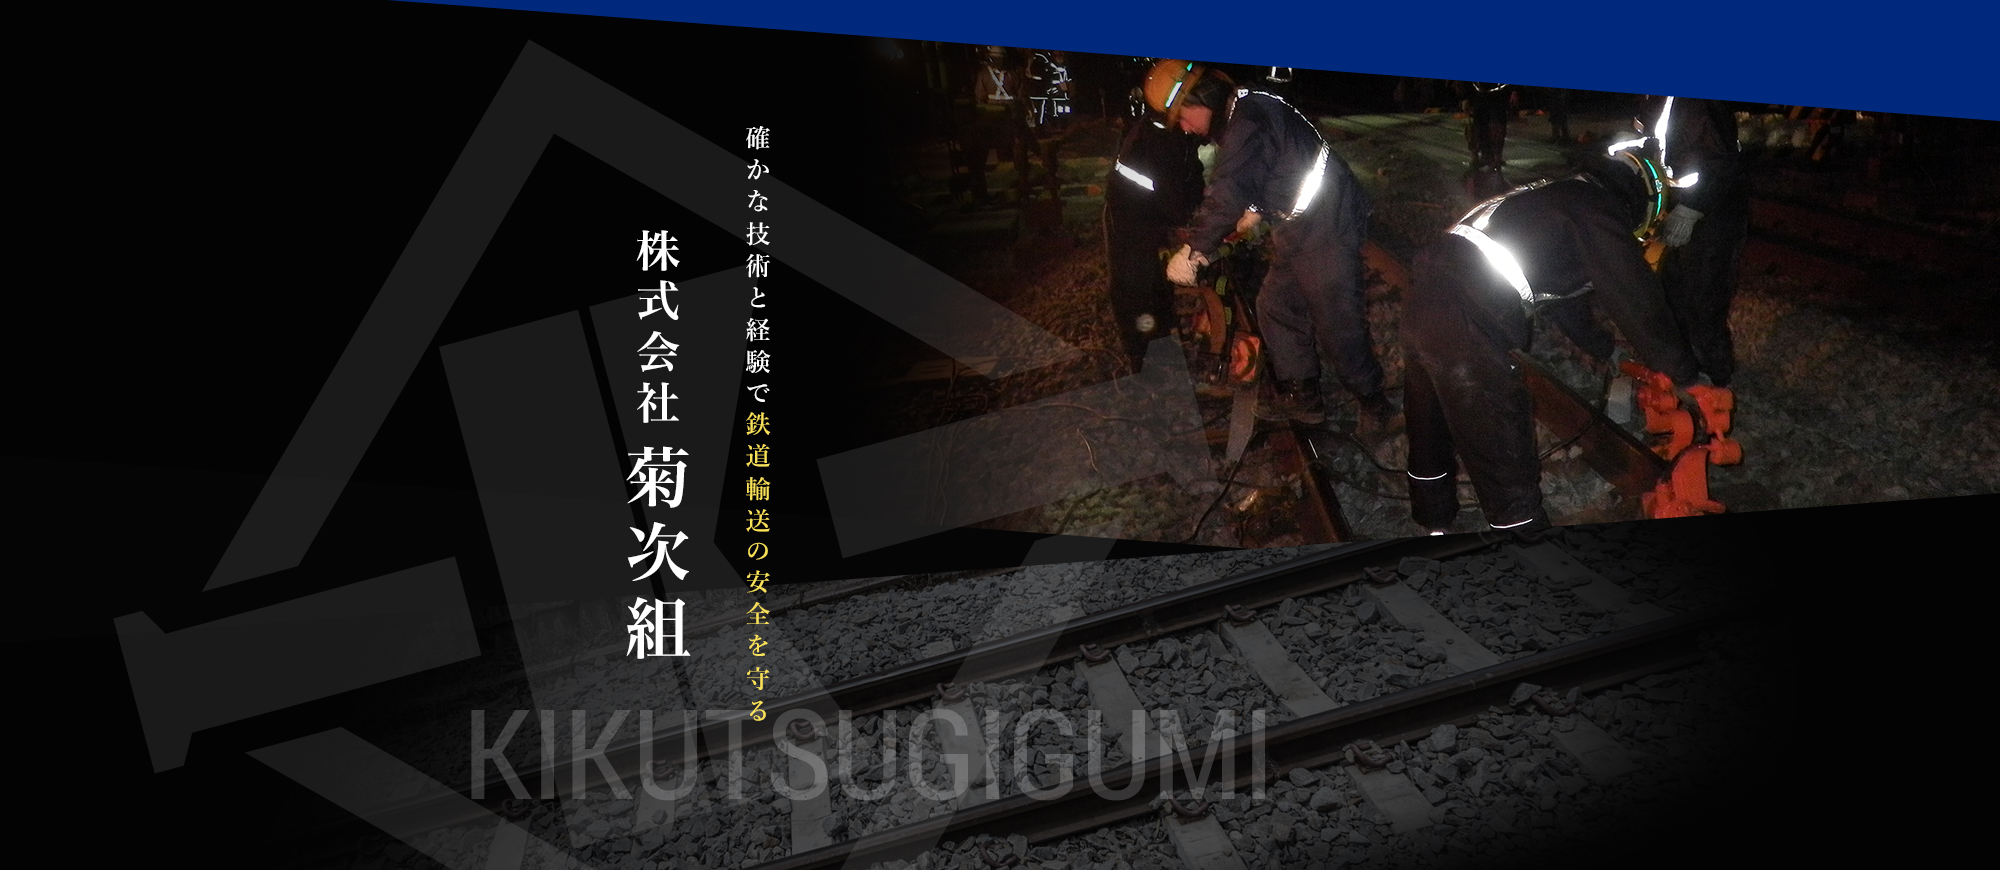 確かな技術と経験で鉄道輸送の安全を守る　株式会社菊次組